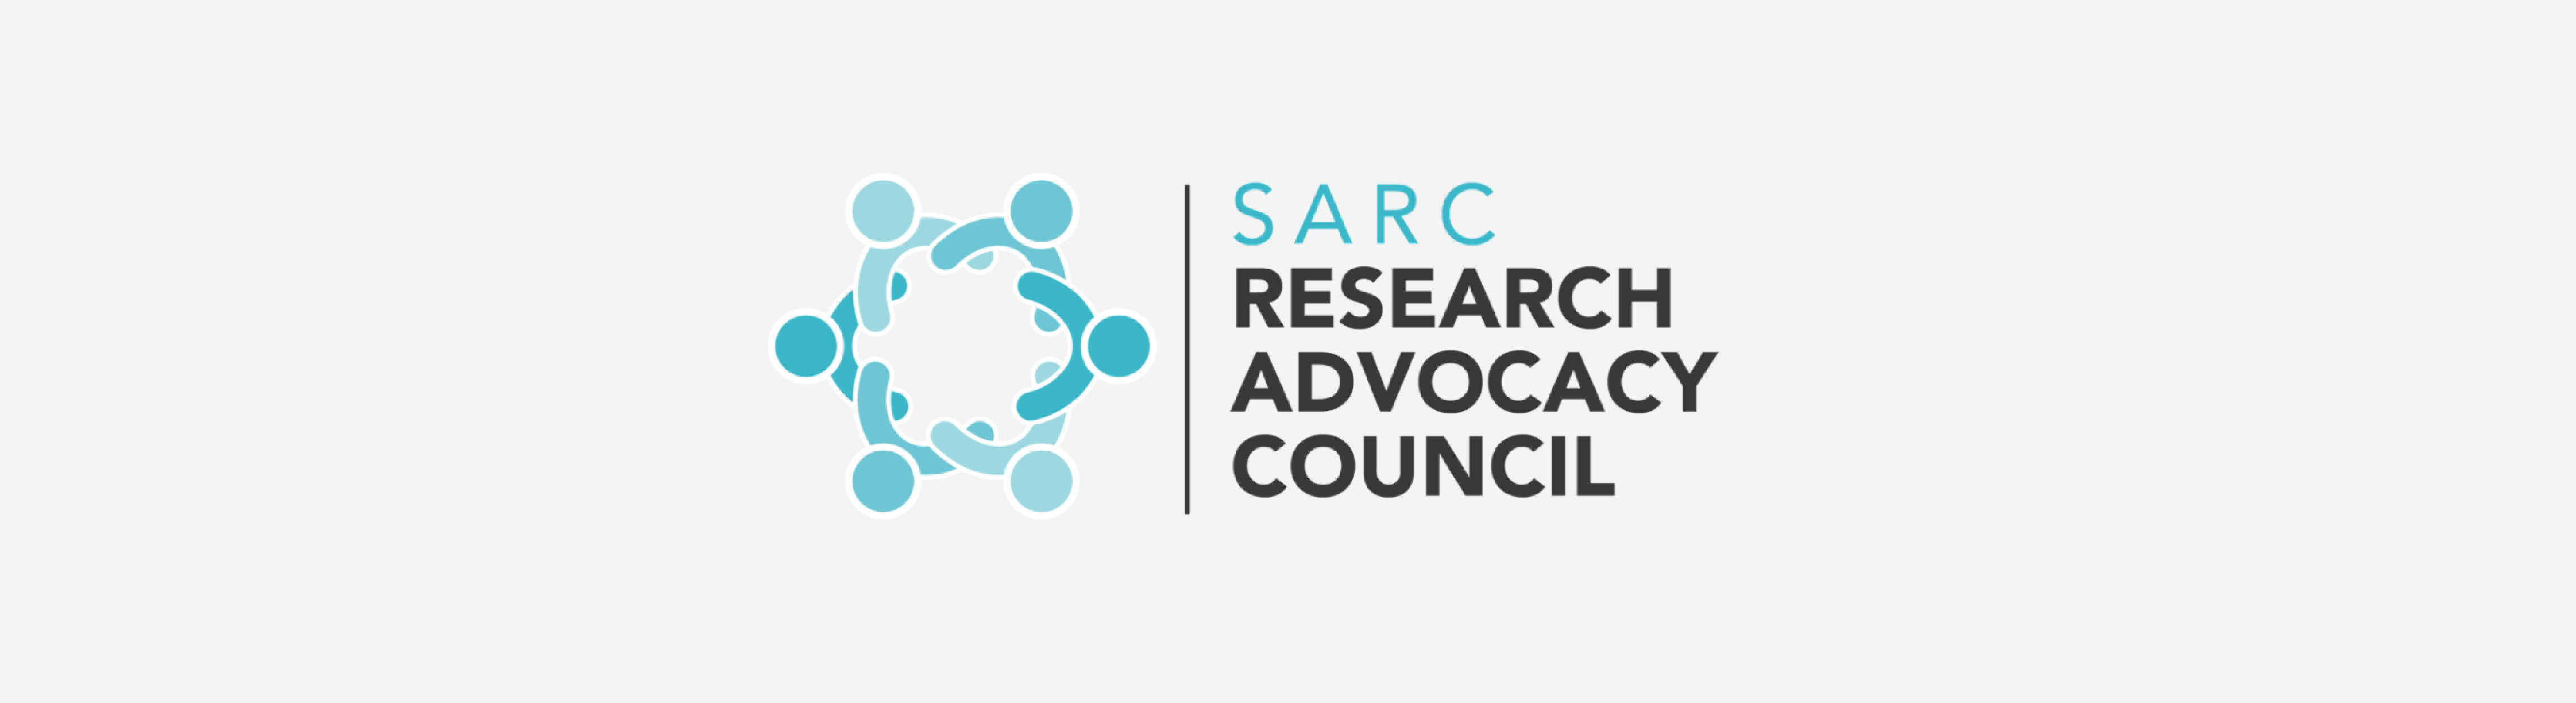 SARC Research Advocacy Logo (grey background)